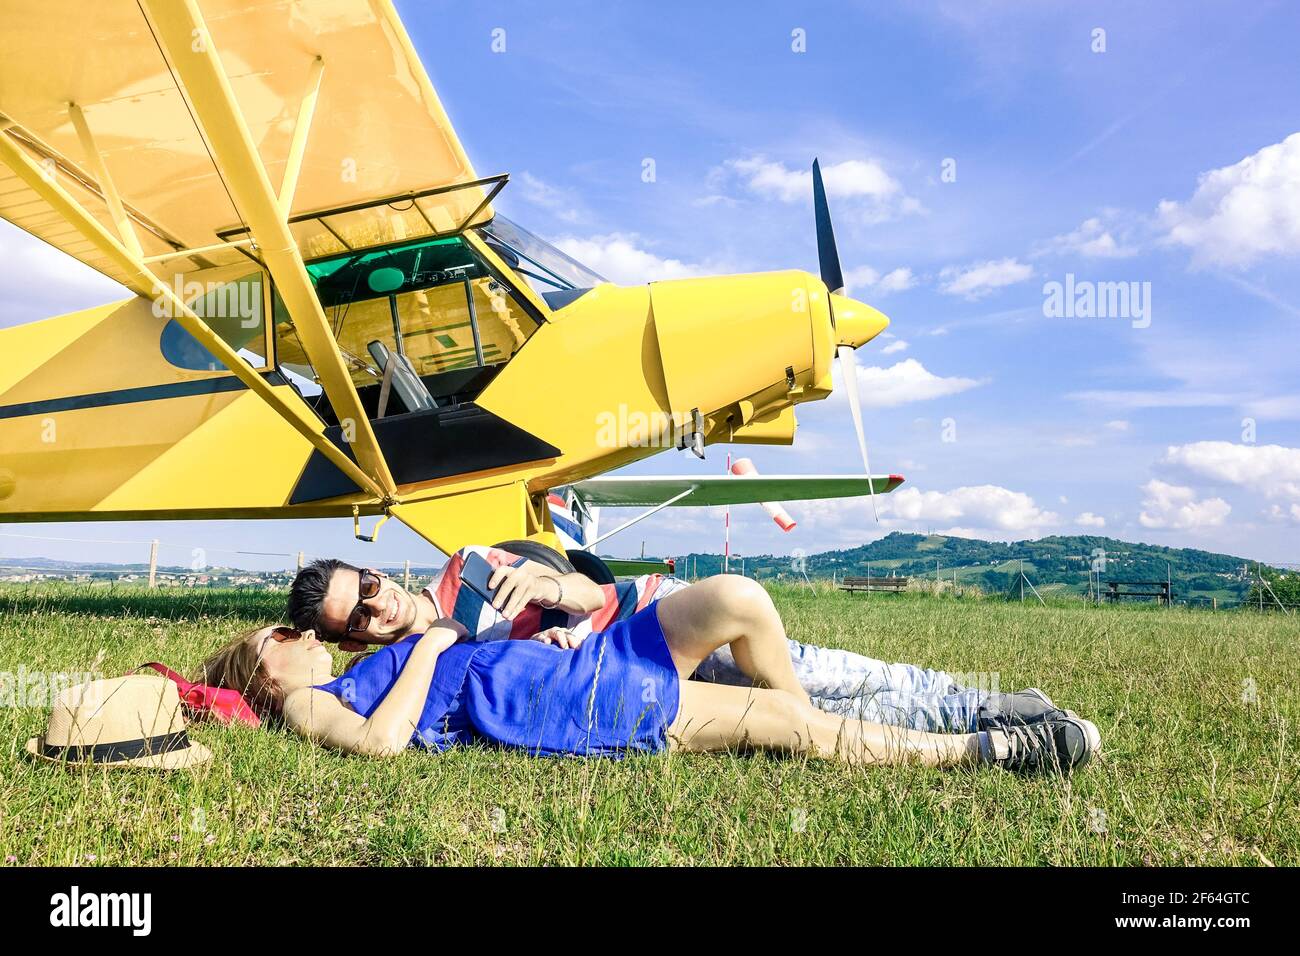 Entspanntes Paar von Liebenden, die sich während des Charterflugzeugs ausruhen Exkursion - Wanderlust Konzept des alternativen Menschen Lebensstil Reisen herum Welt Stockfoto